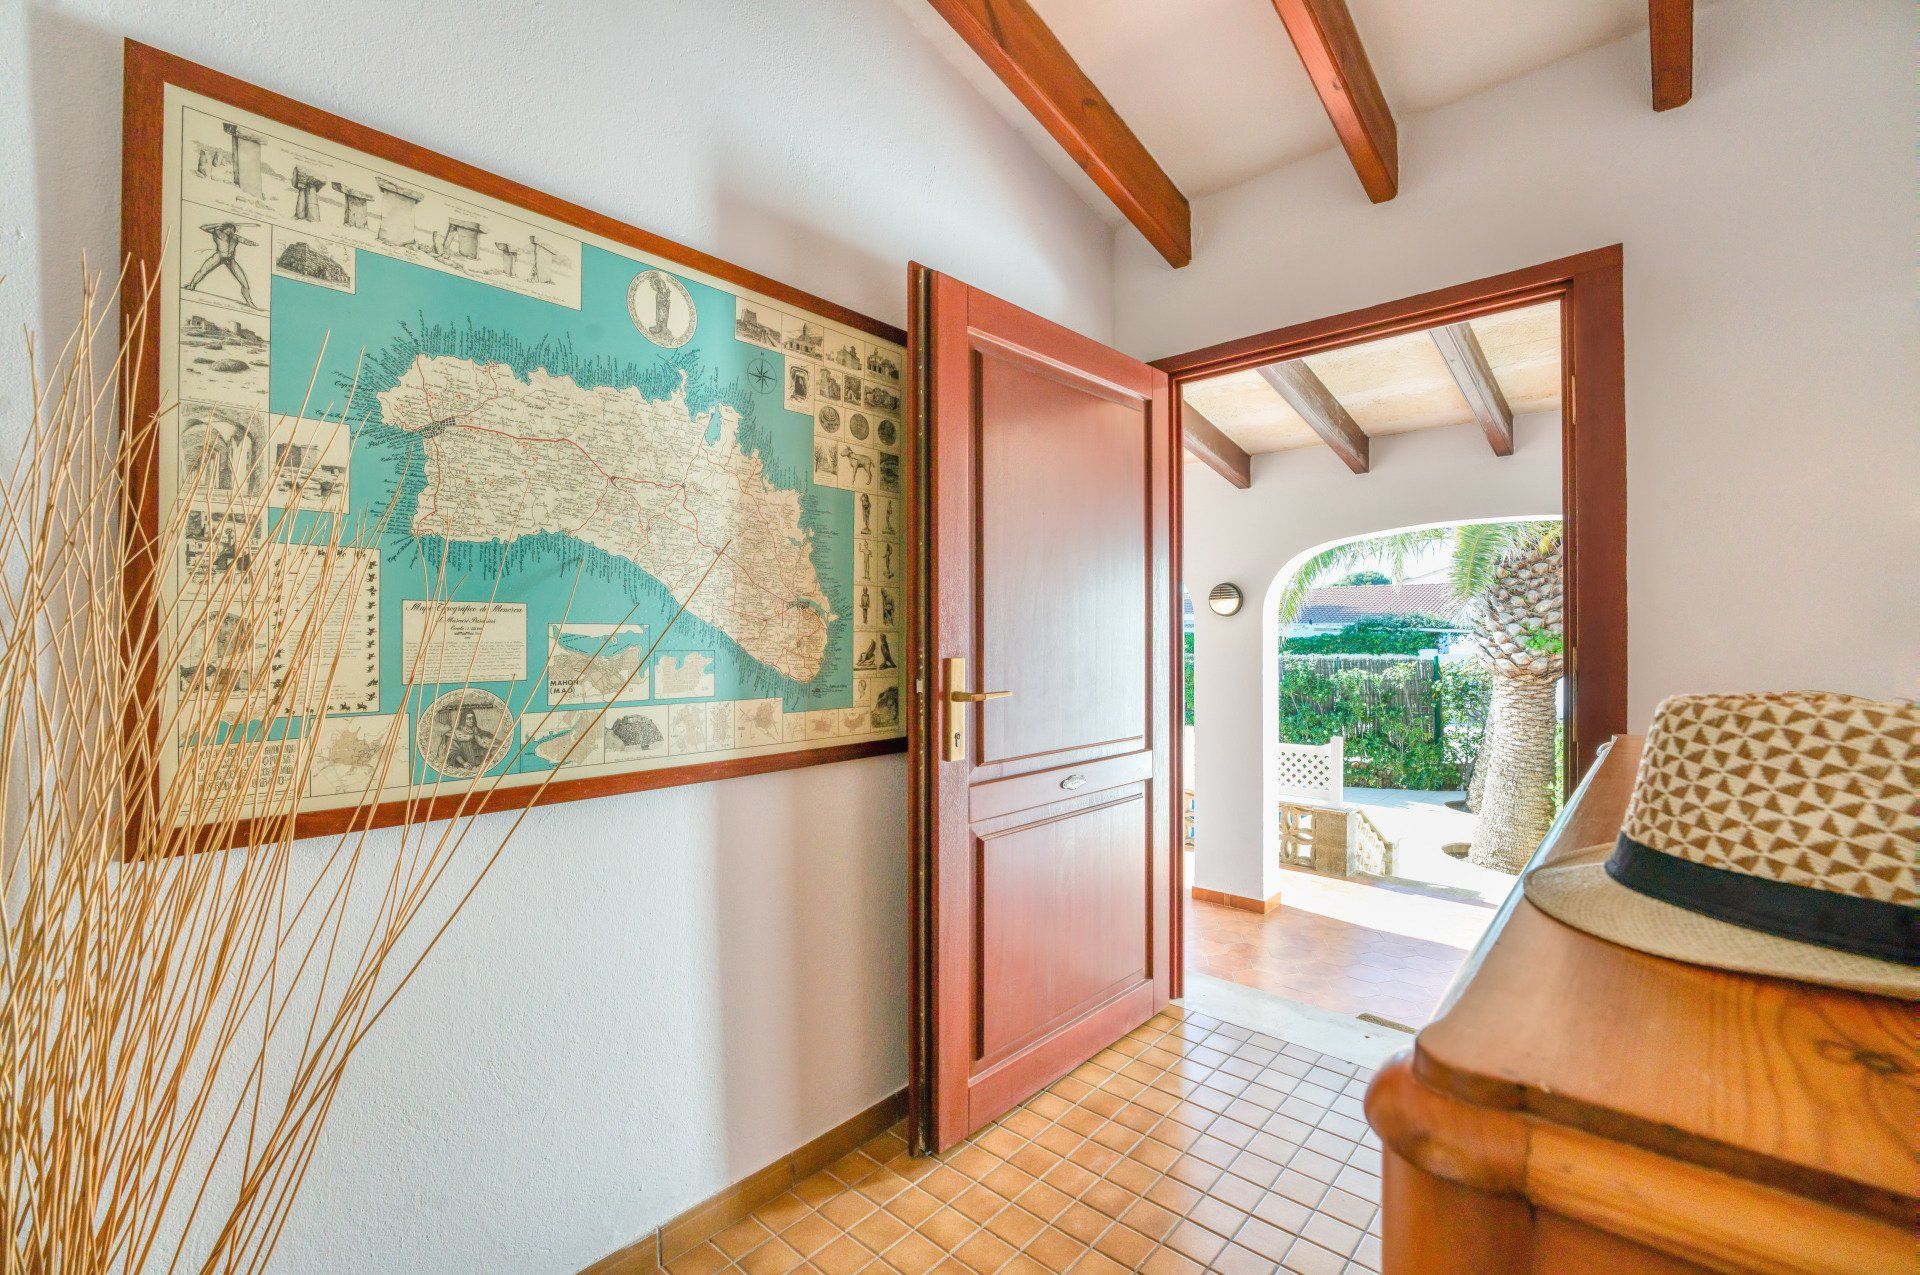 Recibidor de Villa Aure, con el mapa de Menorca a todo color.